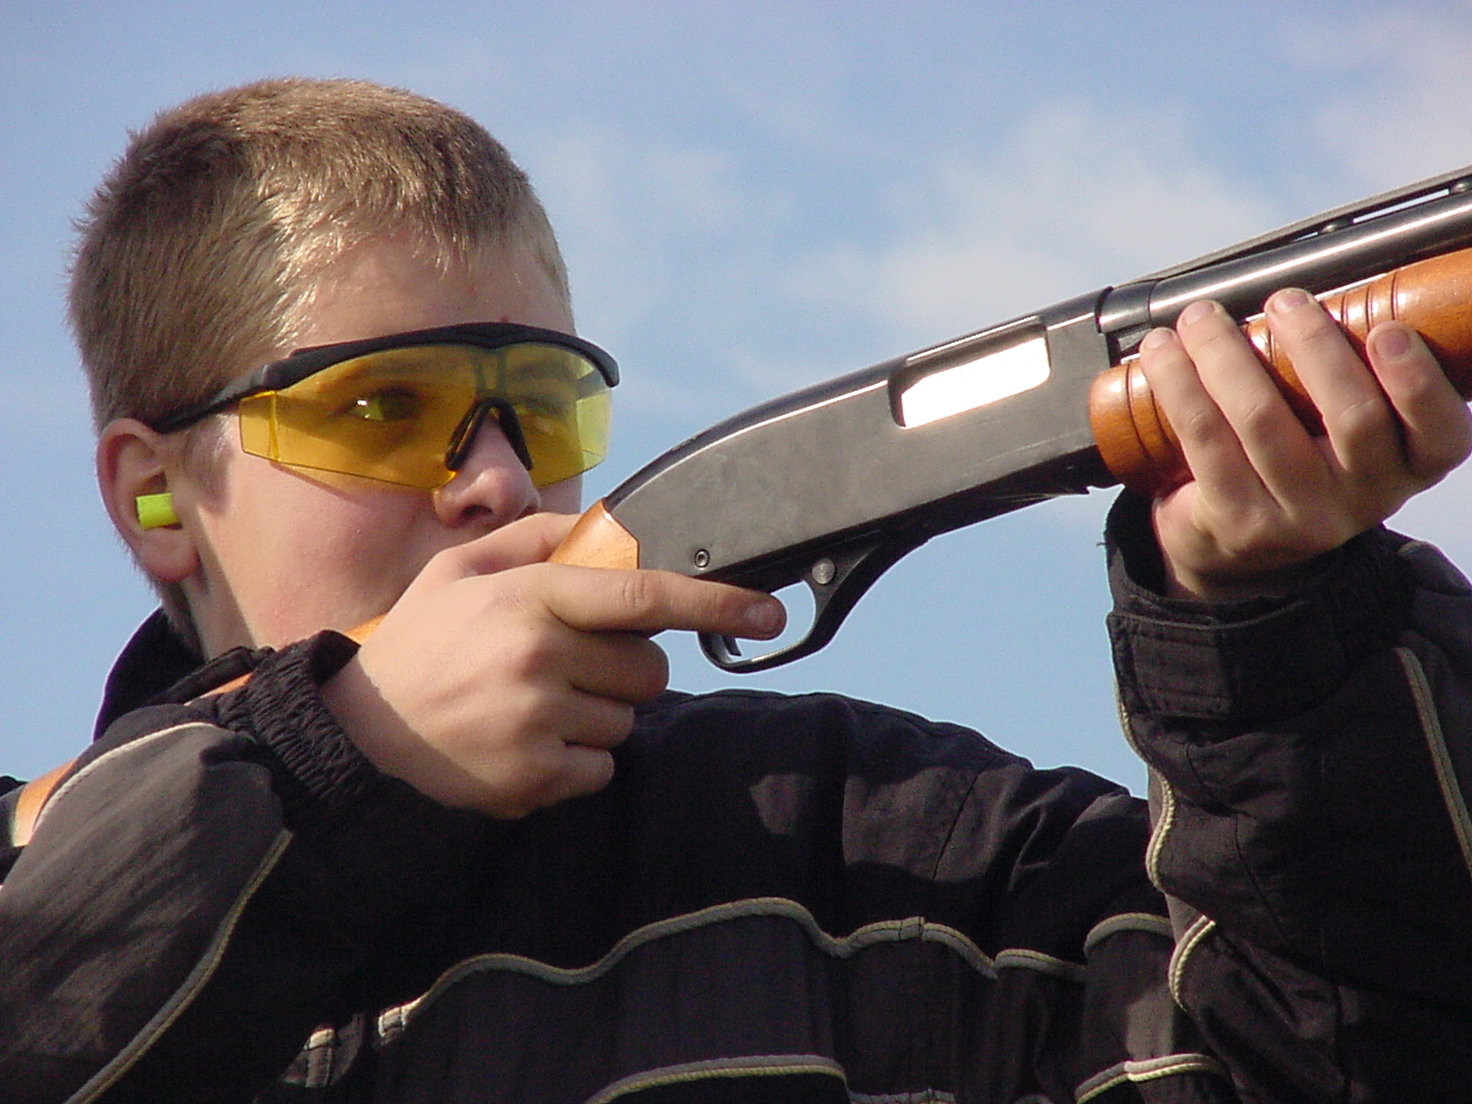 Youth at shooting range.